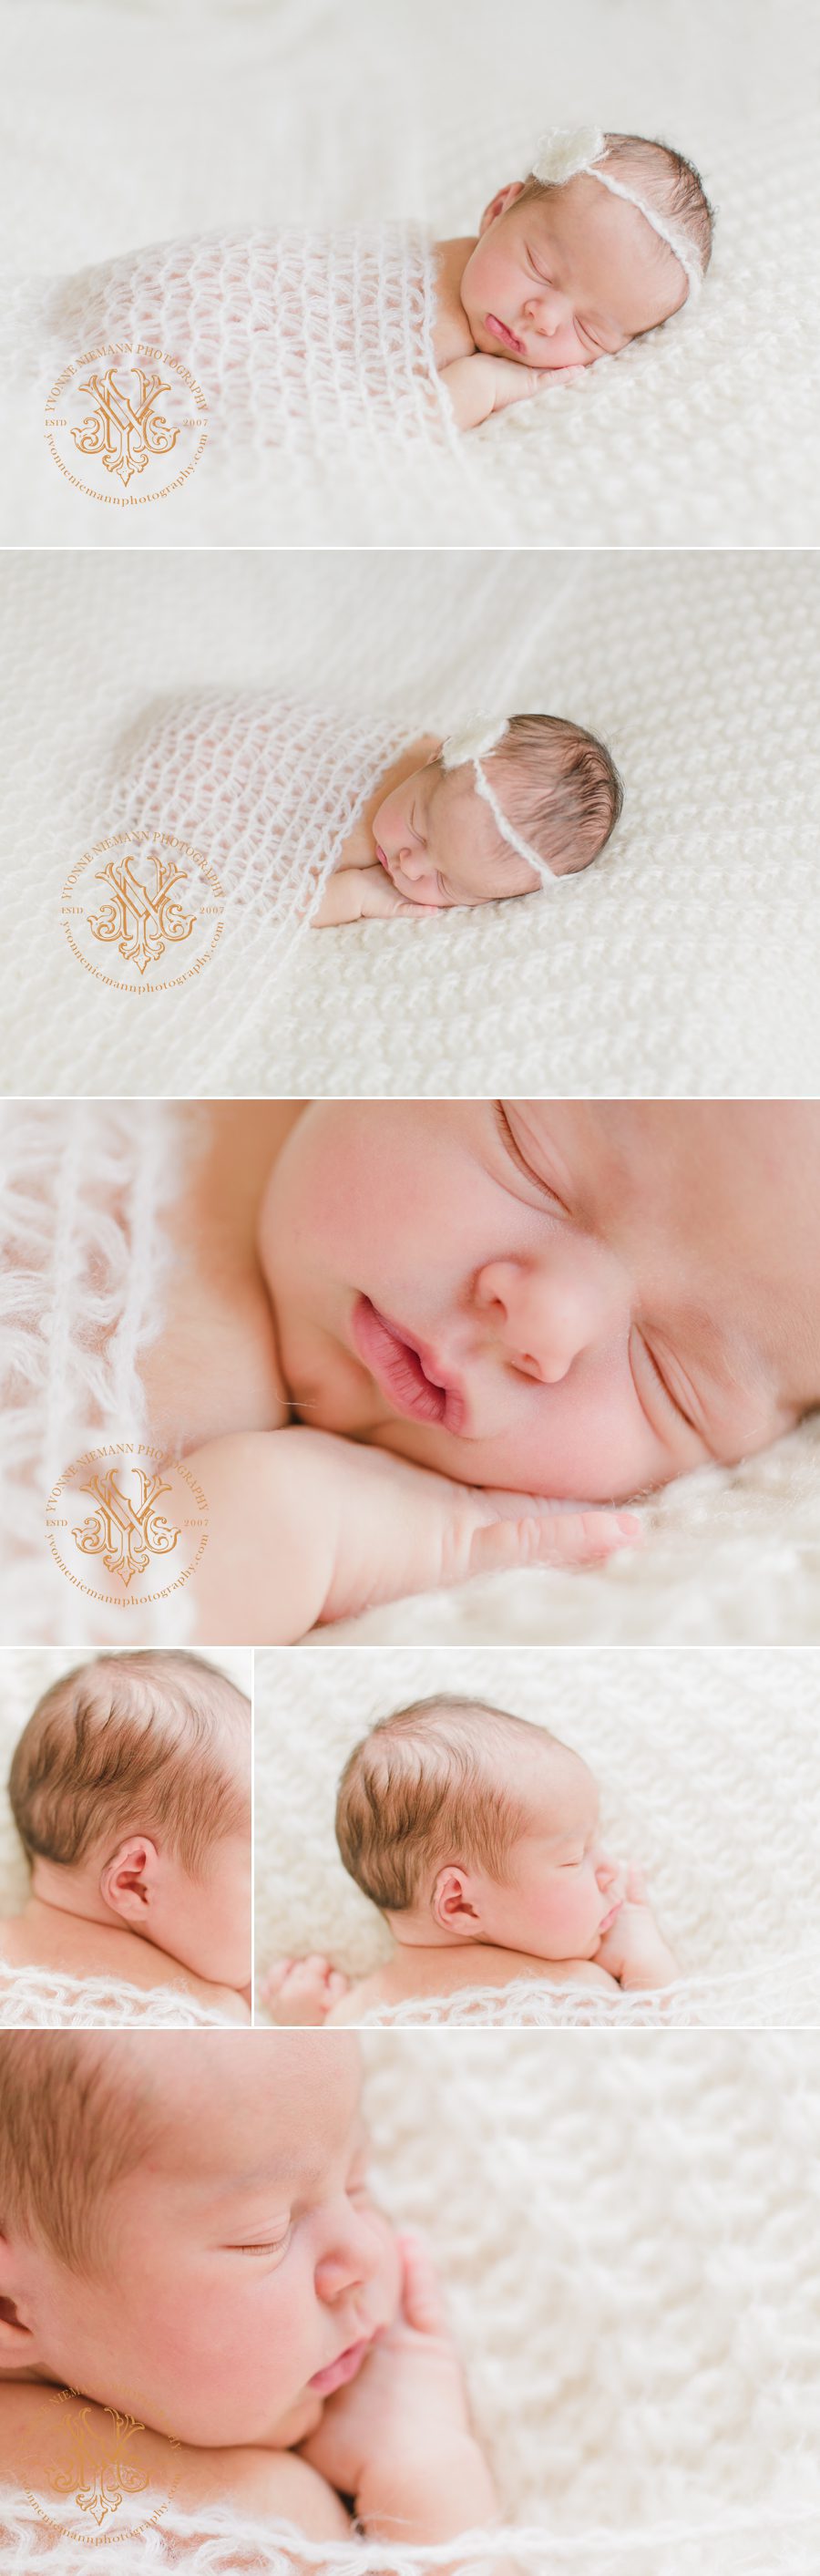 Simple newborn photos of 1 week old baby girl in Bishop, GA.